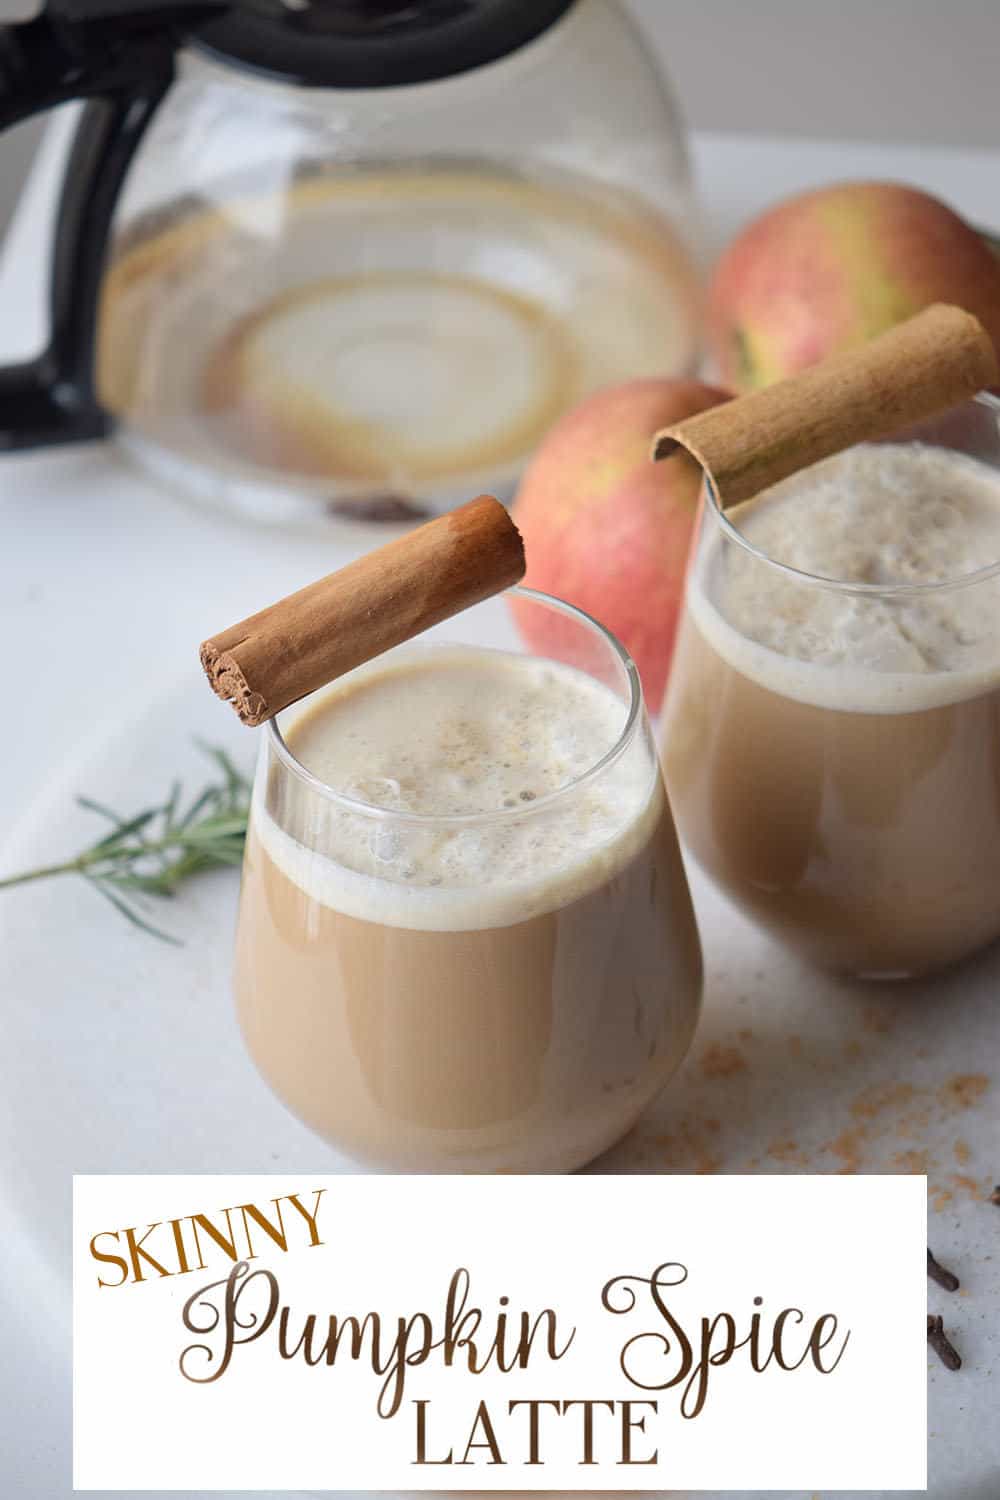 Recipe: The Skinny Pumpkin Spice Latte